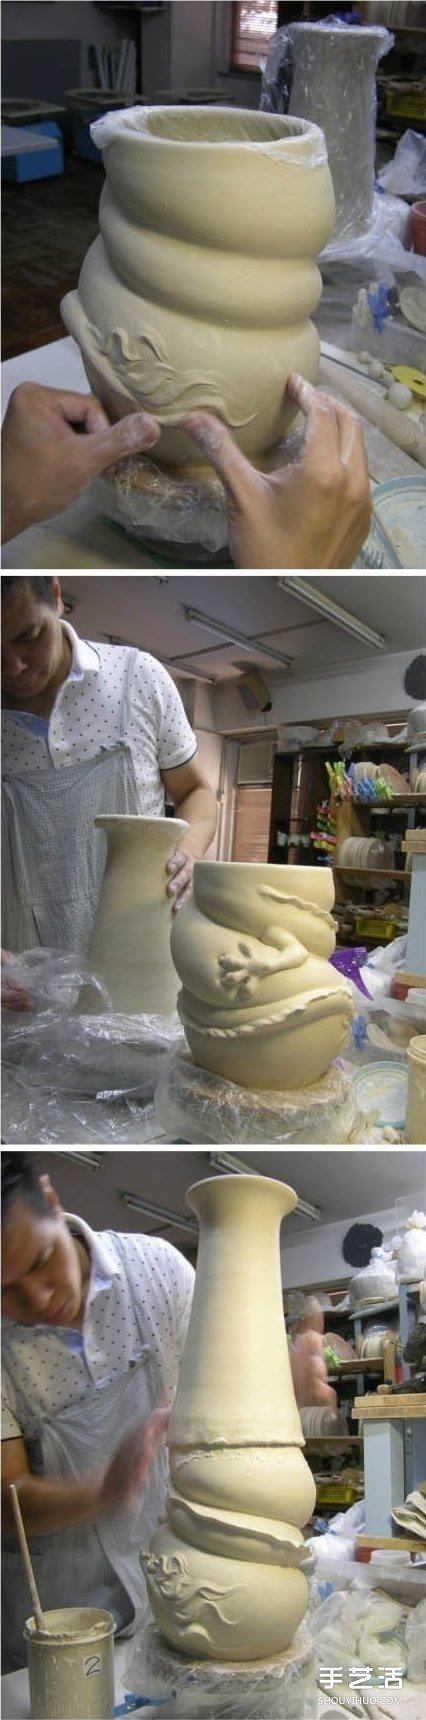 龙形陶瓷瓶DIY制作过程 中国龙盘旋陶瓷瓶制作